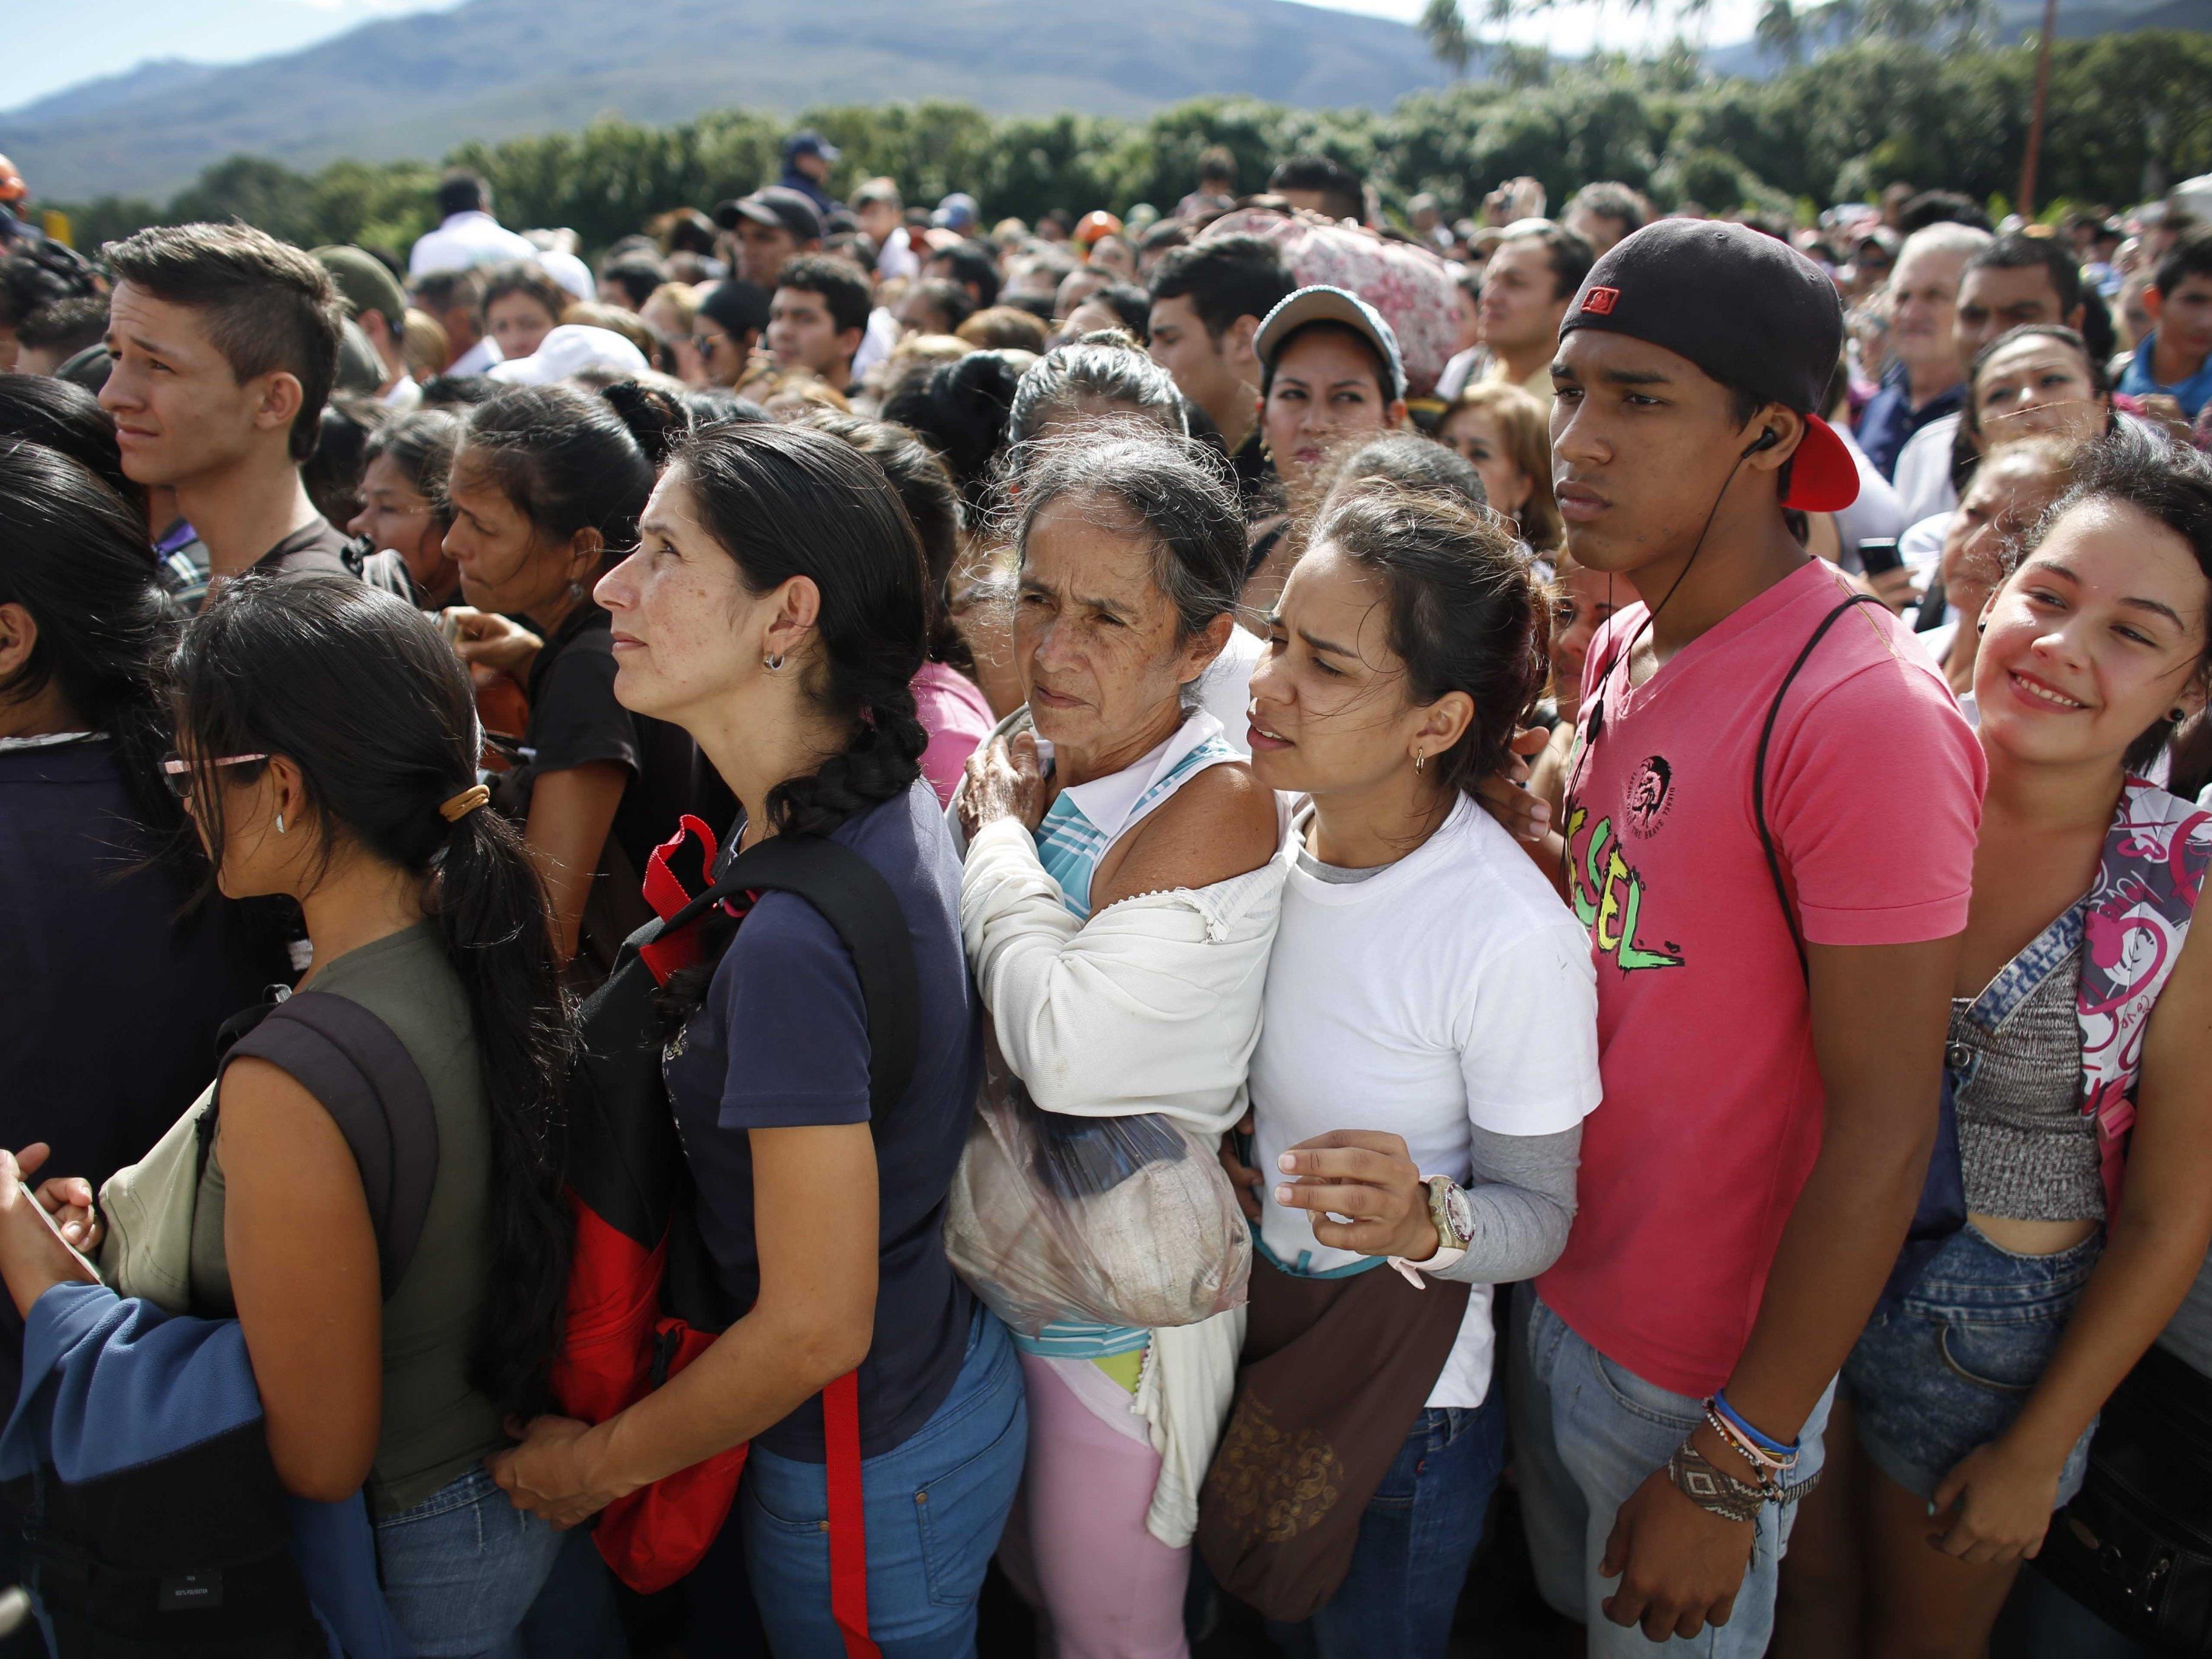 Kolumbien hatte seine Grenzen geöffnet, damit Venezolaner einkaufen konnten